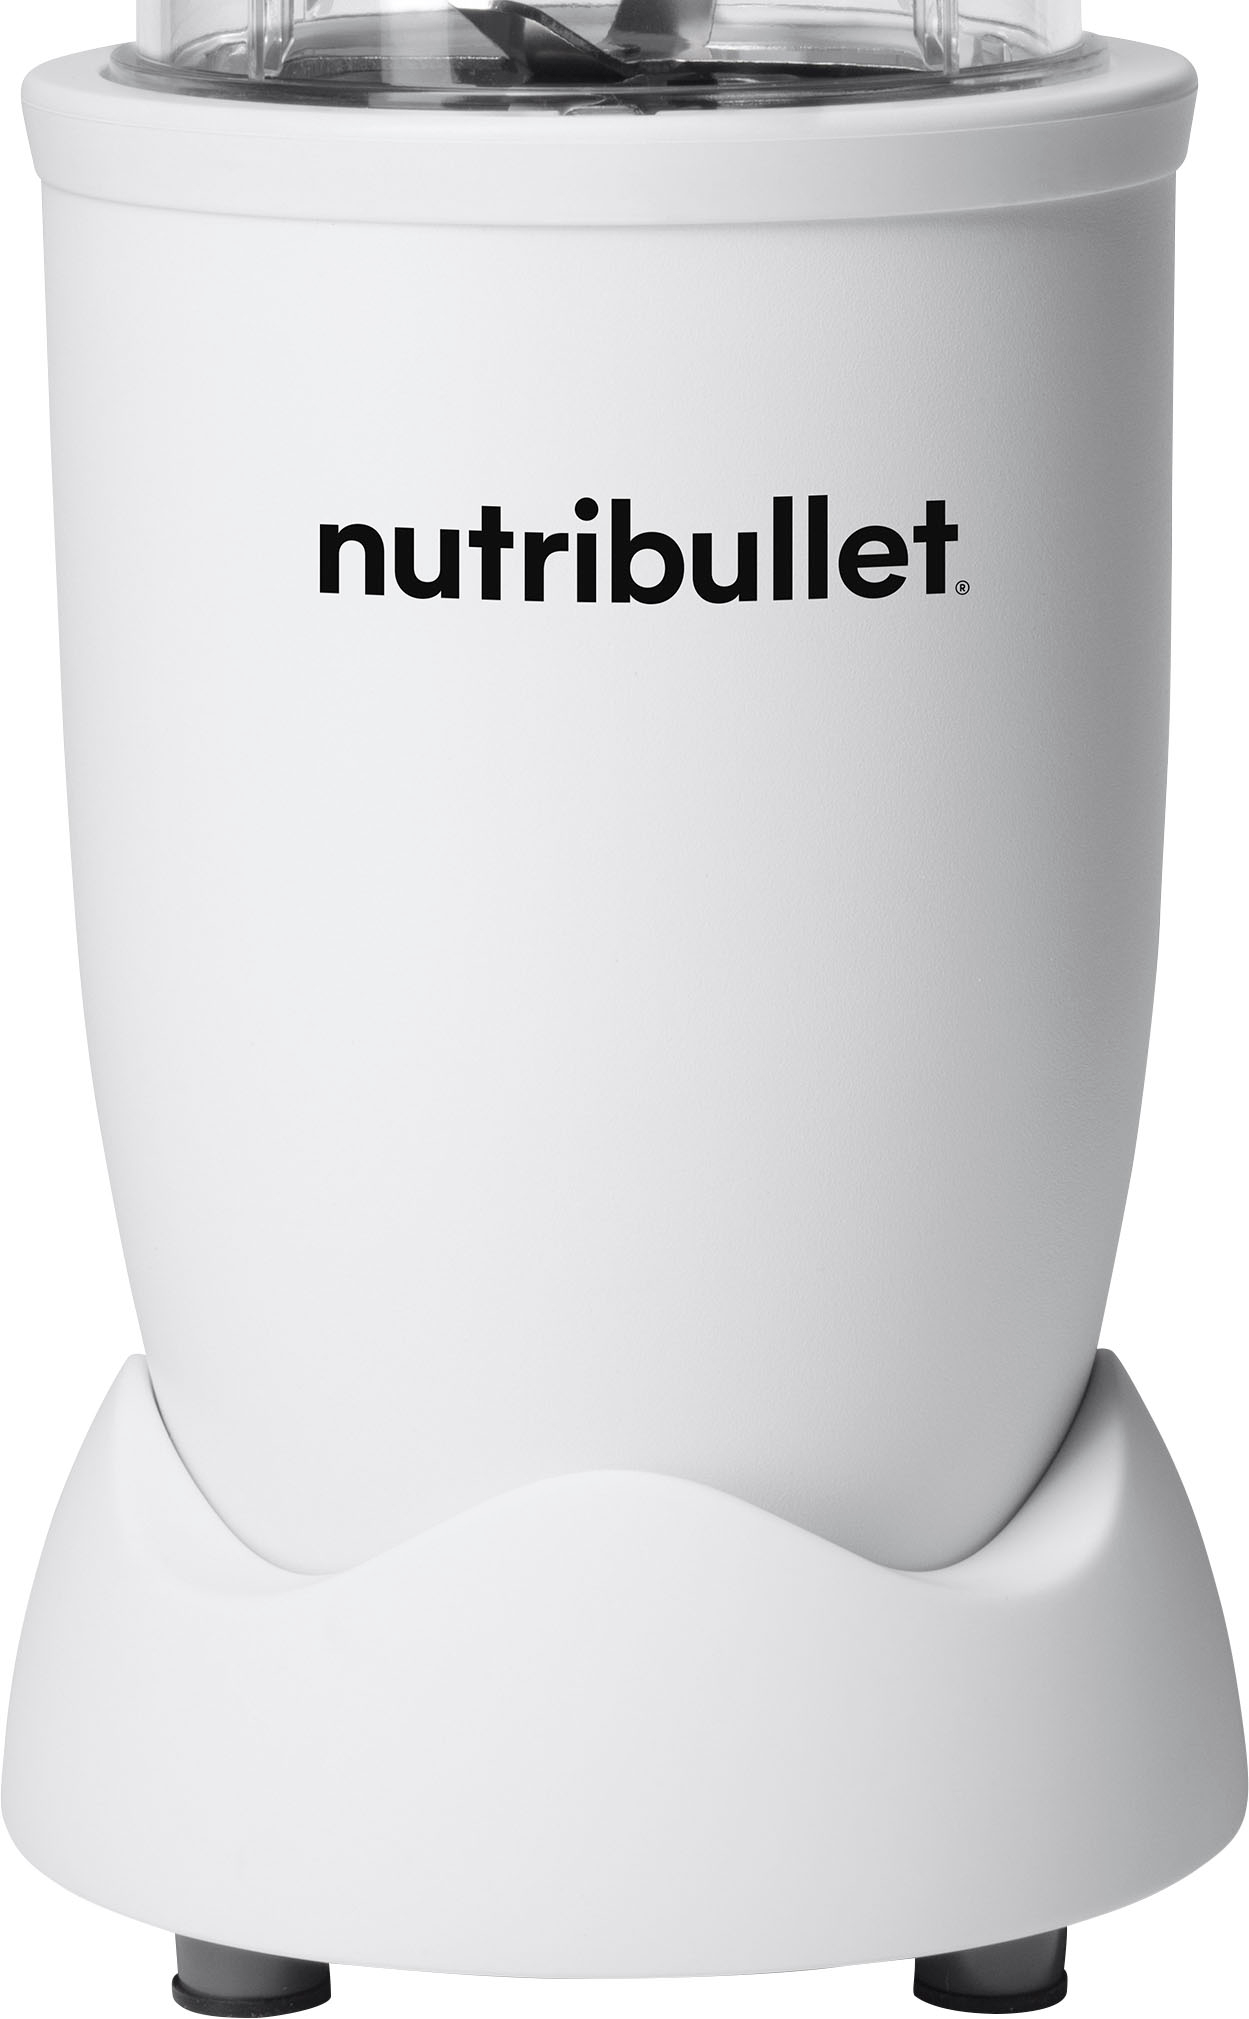 NutriBullet PRO 900-Watt Personal Blender only $34.99 shipped (Reg